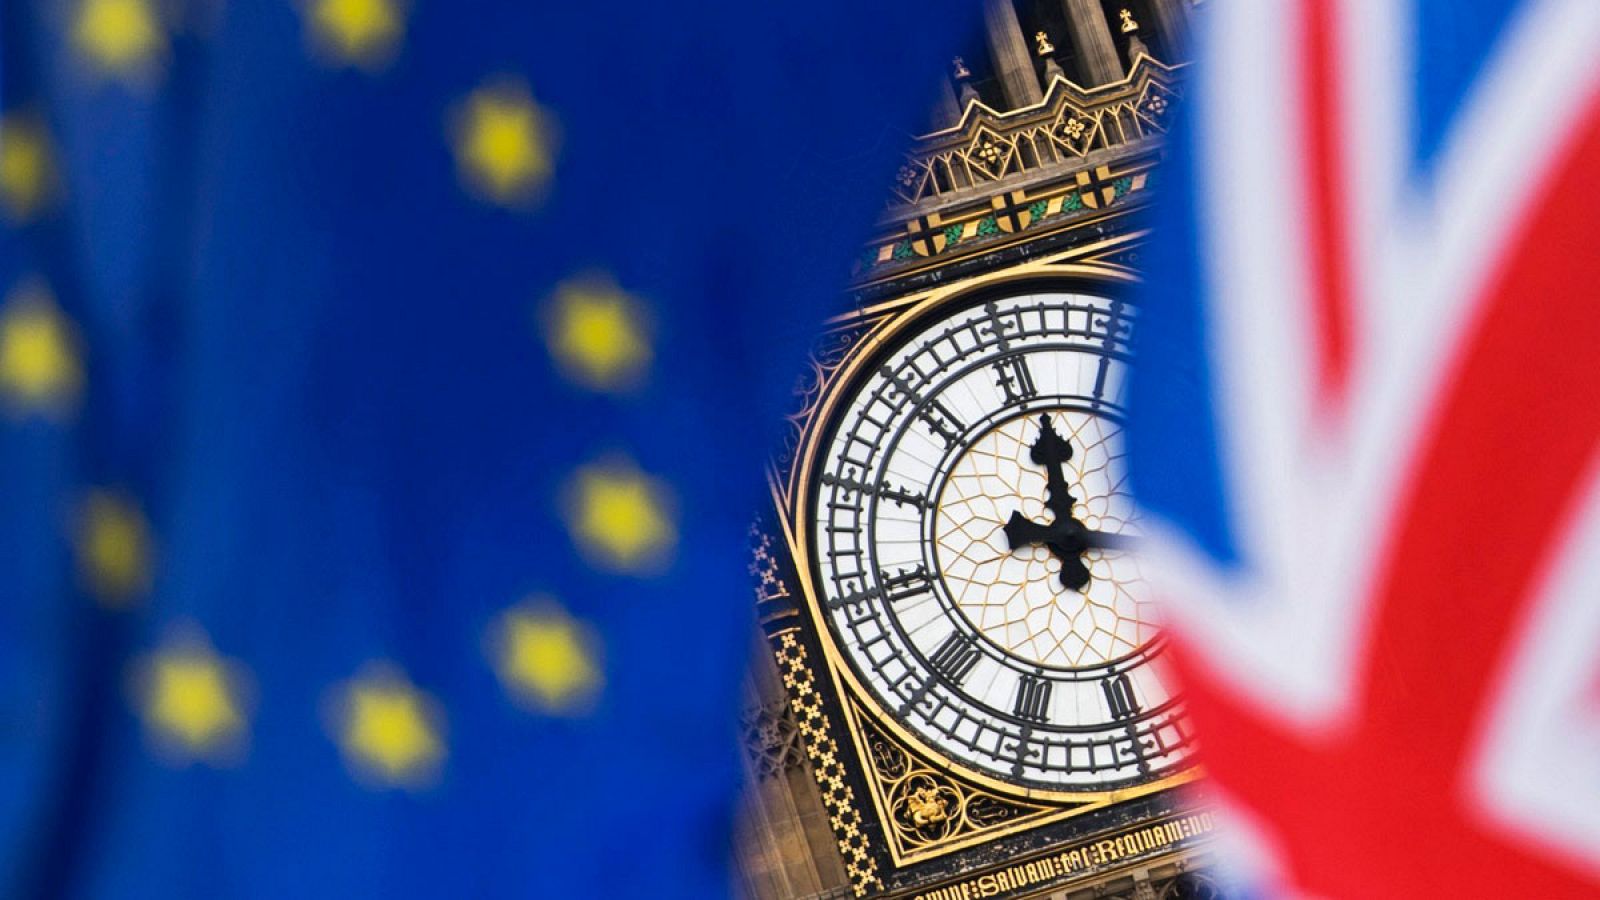 Vista del reloj del Big Ben entre una bandera del Reino Unido y una de la Unión Europea durante una protesta contra el "brexit" en el exterior del parlamento británico en Londres (Reino Unido), el 5 de septiembre de 2017.